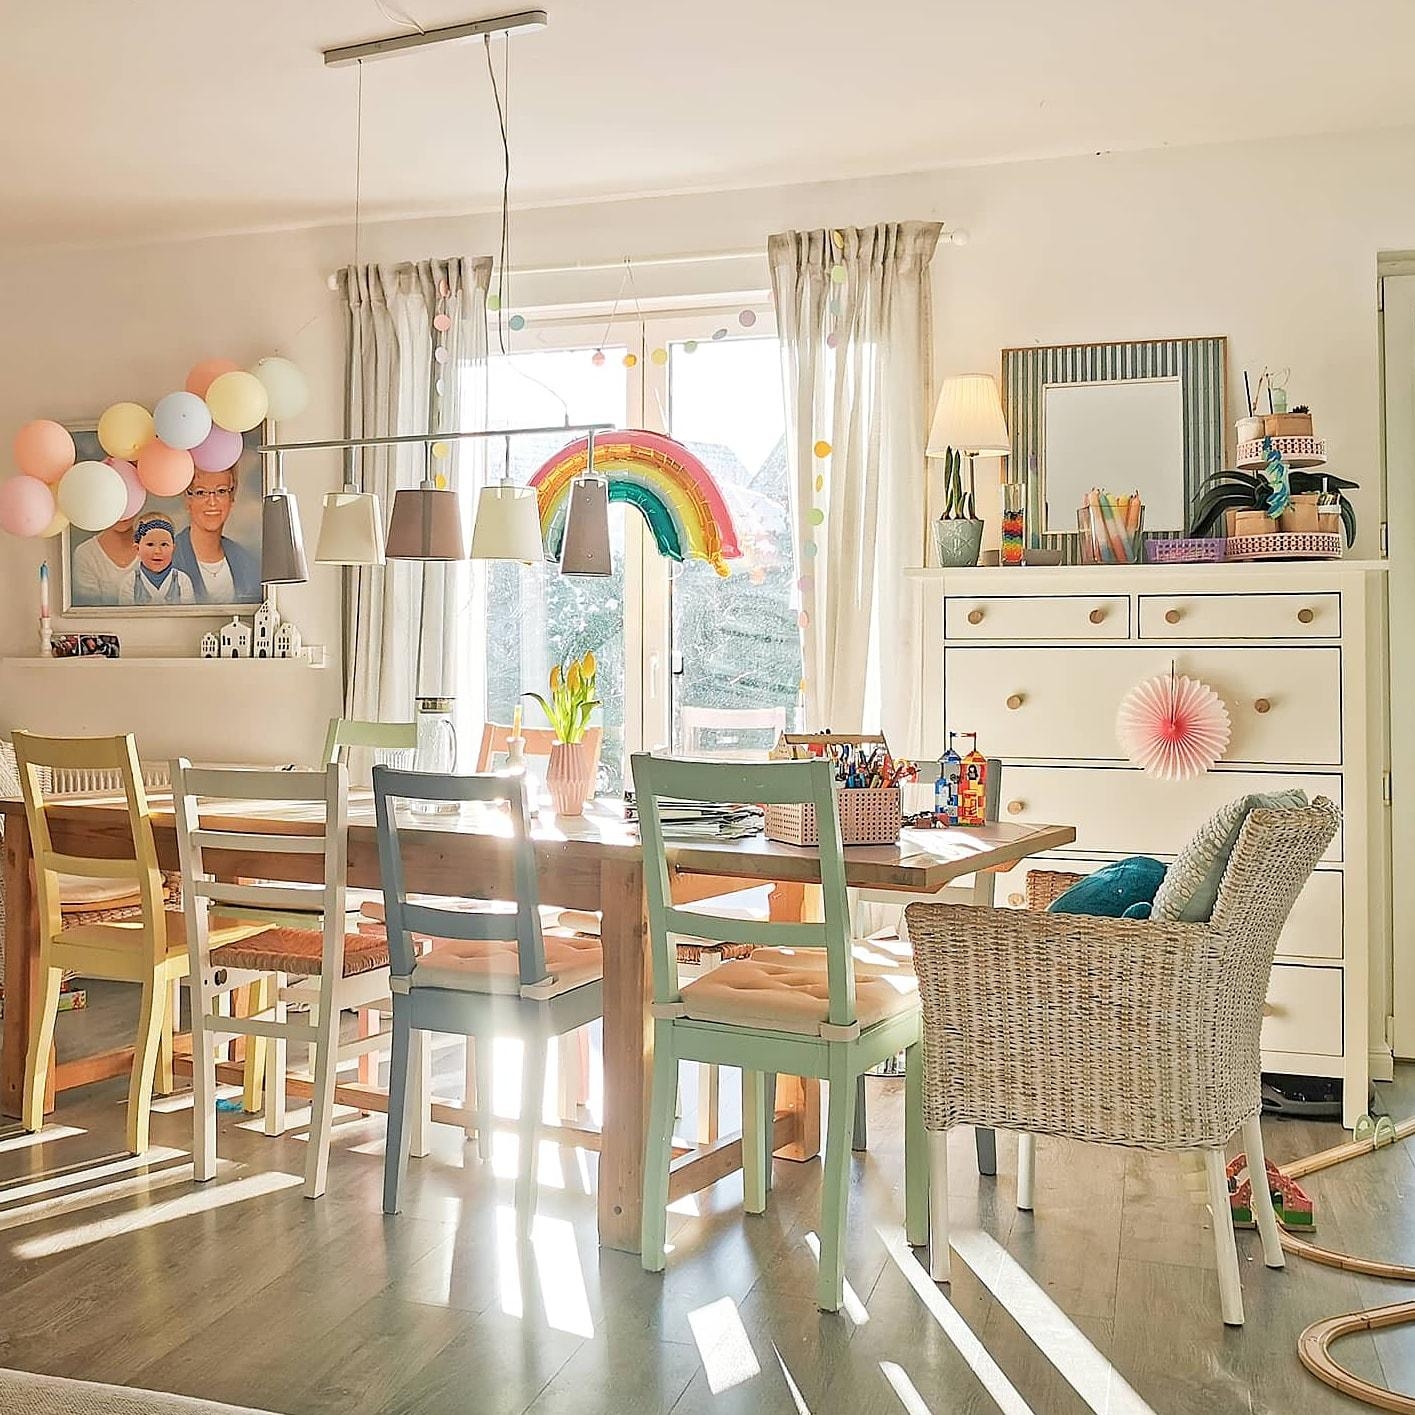 Unser buntes Zuhause voller #happycolours. 
#frühling #pastell #bunt #esszimmer #esstisch #ostern #wohnzimmer 